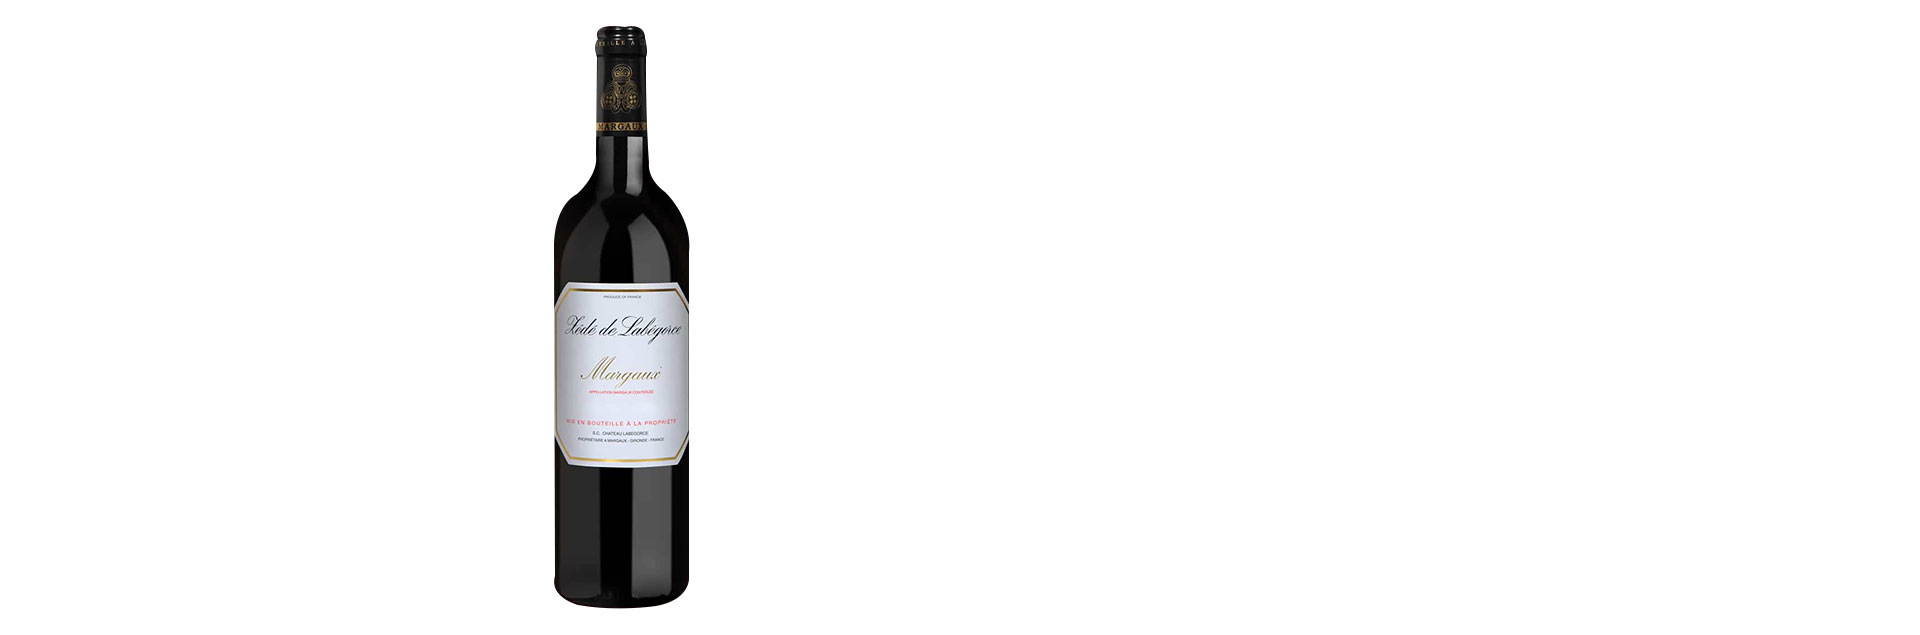 Rượu vang Zédé De Labegorce 2ème vin de Chateau Labegorce Margaux 2015